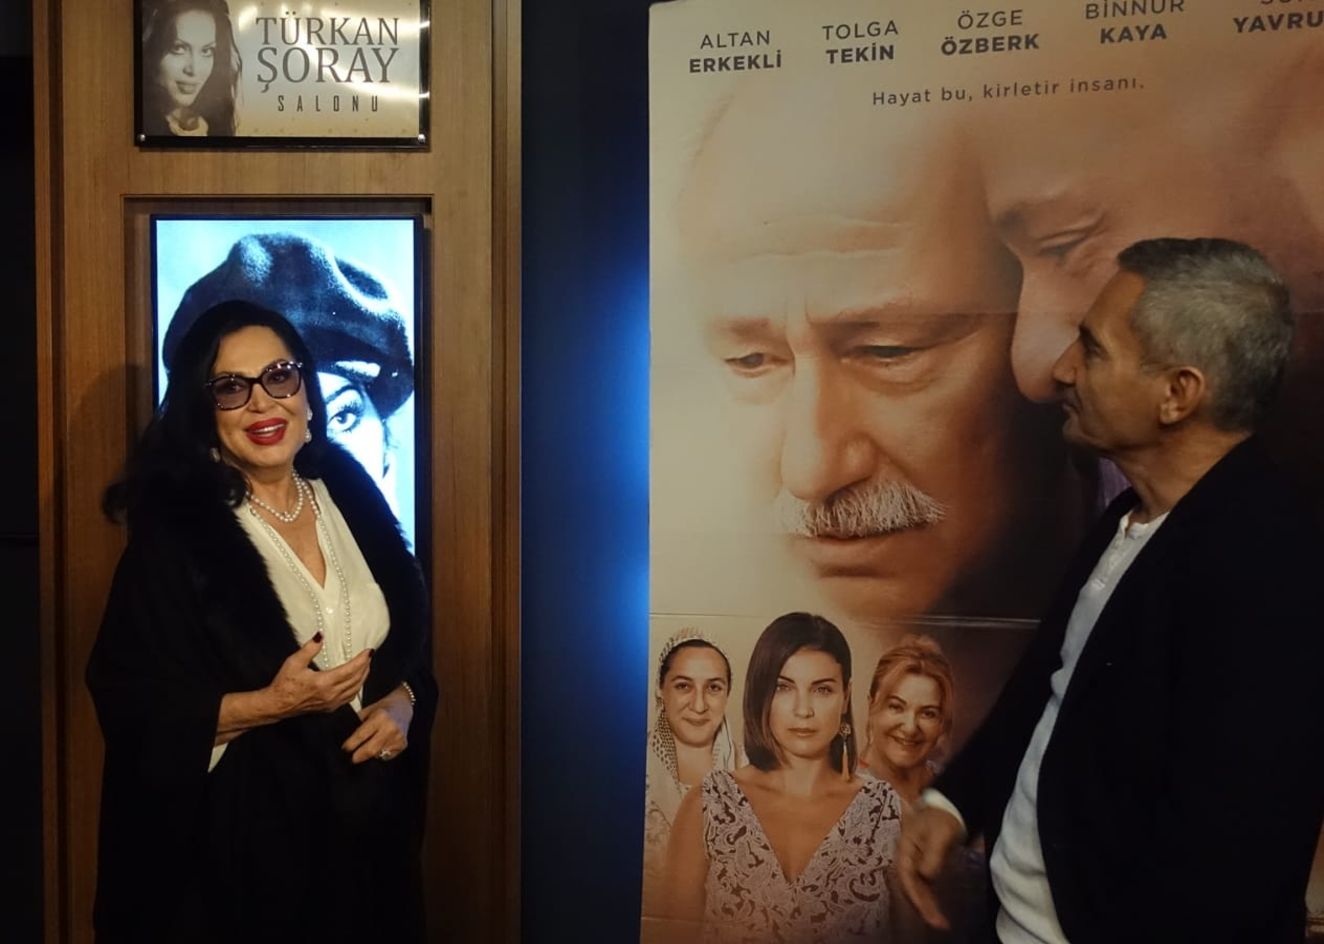 Şükrü Avşar, yeni açtığı sinema salonlarından birine Türkan Şoray'ın adını verdi.  